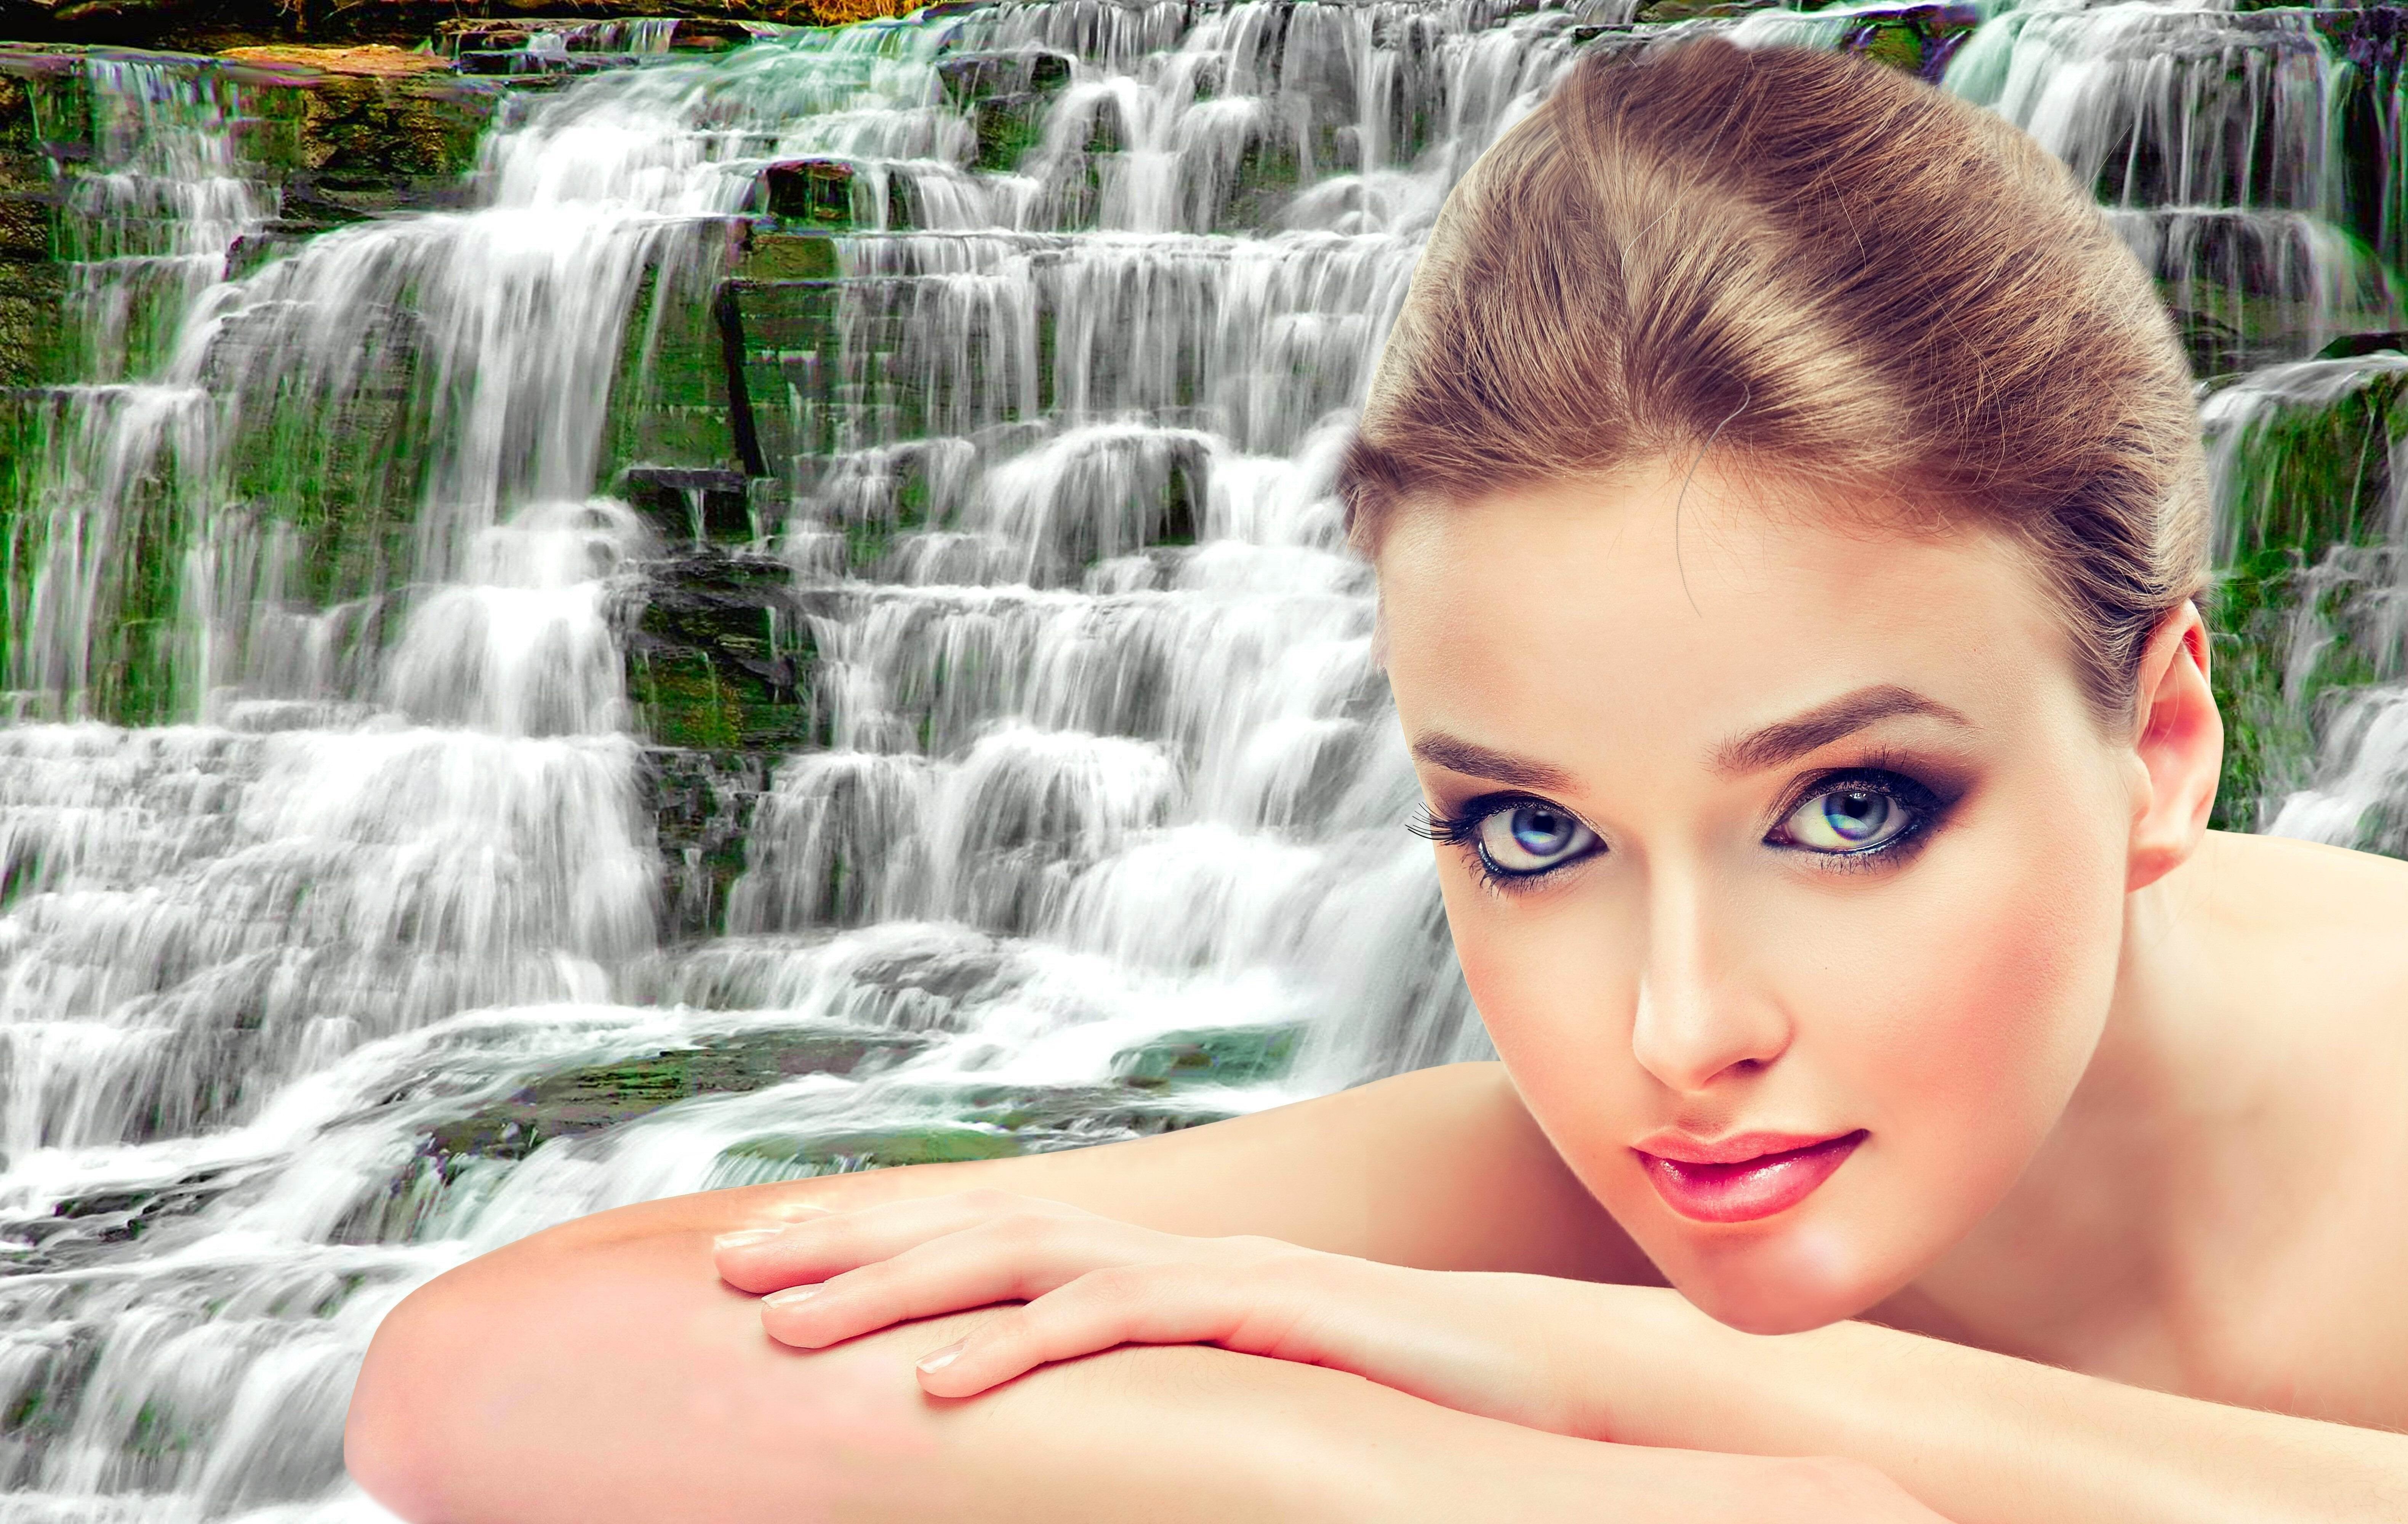 Заставки на телефон бесплатные на весь девушки. Девушка на фоне водопада. Красавица у водопада. Красивые девушки на заставку. Фотосессия у водопада.